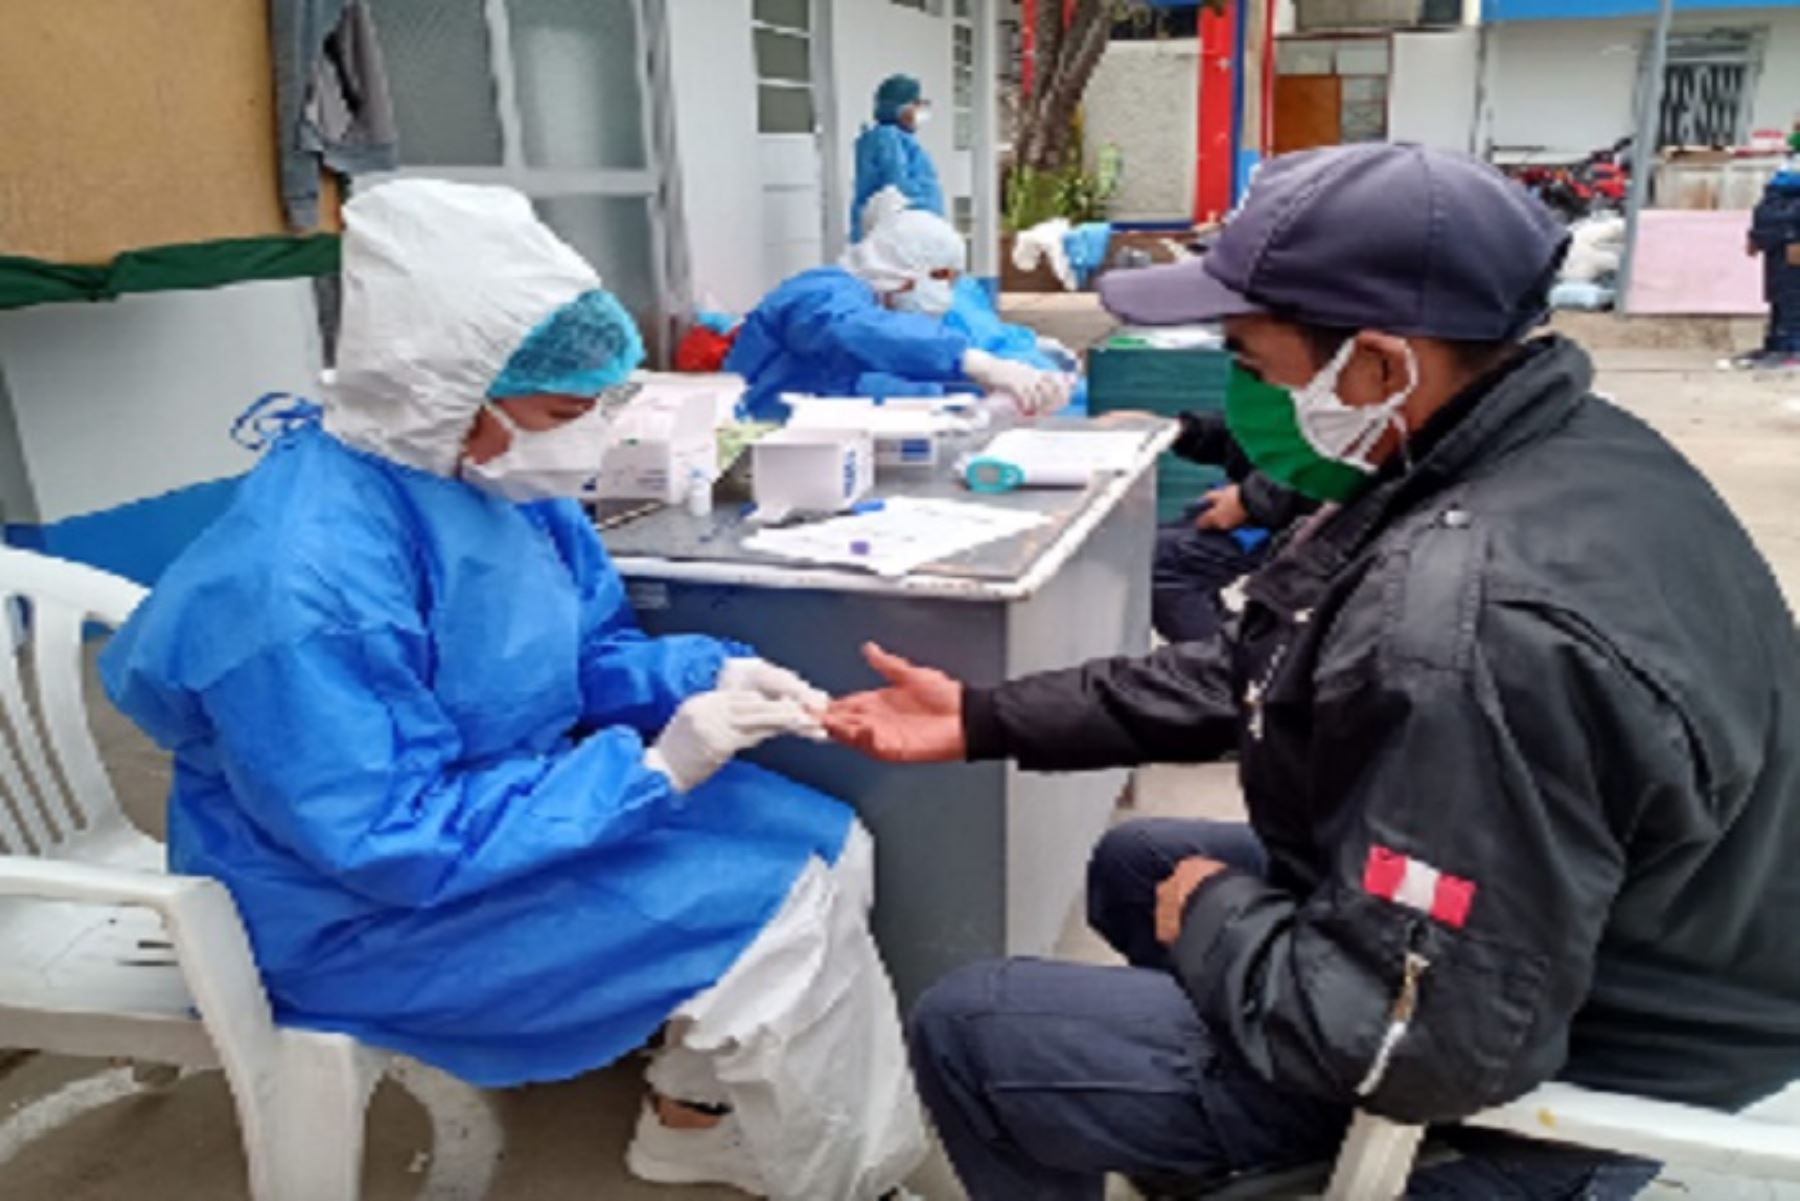 La Red de Salud Valle del Mantaro efectuó hoy 77 exámenes clínicos y aplicó 44 pruebas rápidas, entre policías municipales y personas que viajarán a la ciudad de Lima.